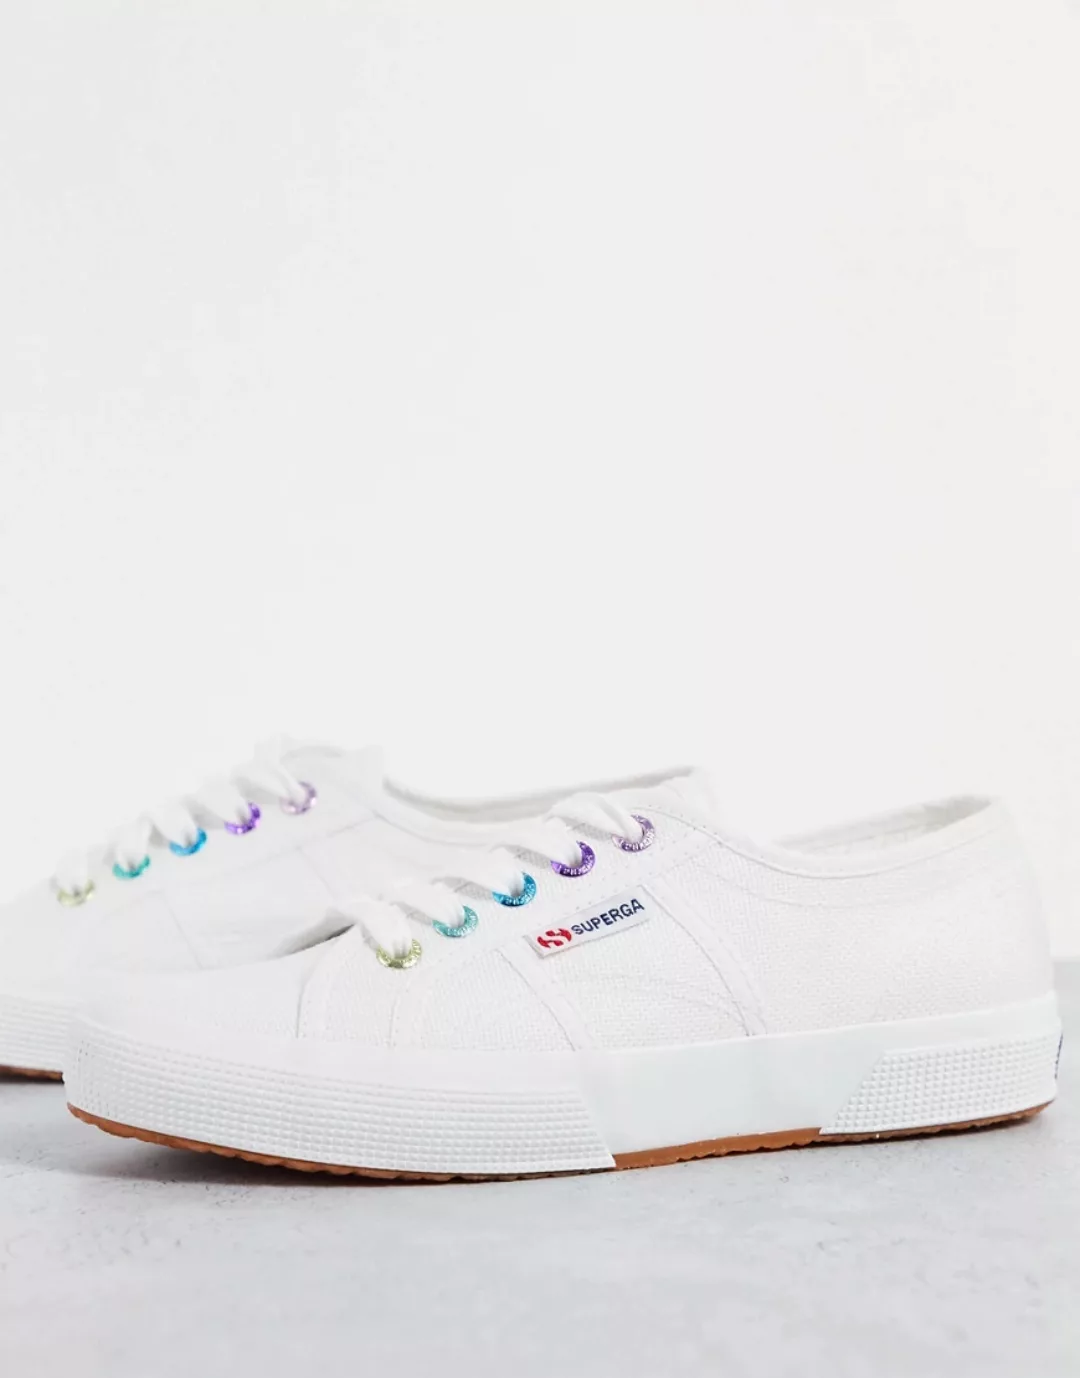 Superga – 2750 – Sneaker in Weiß mit Ösen in Regenbogenfarben günstig online kaufen